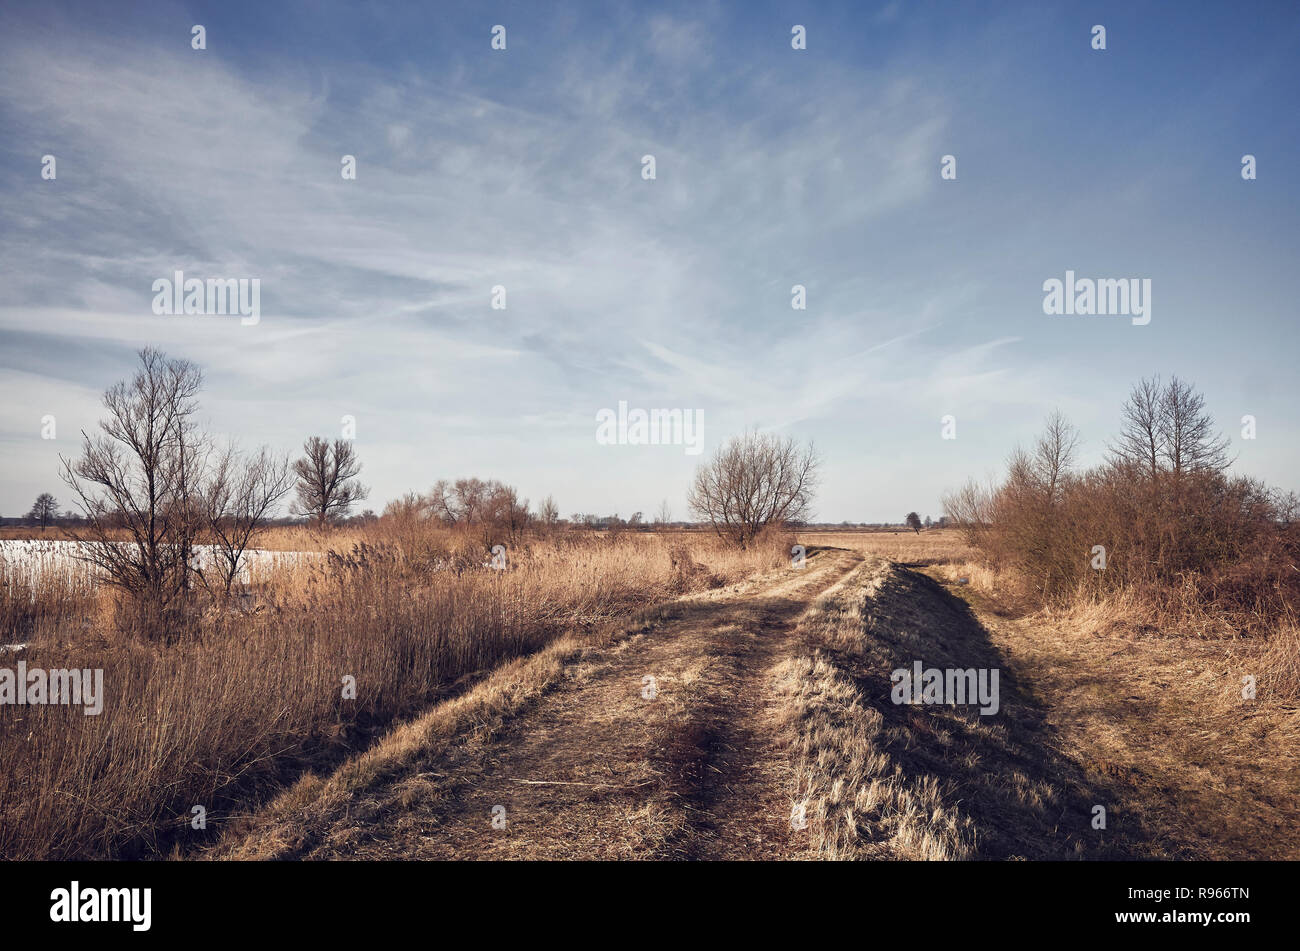 Paesaggio rurale con un percorso, dai toni di colore dell'immagine. Foto Stock